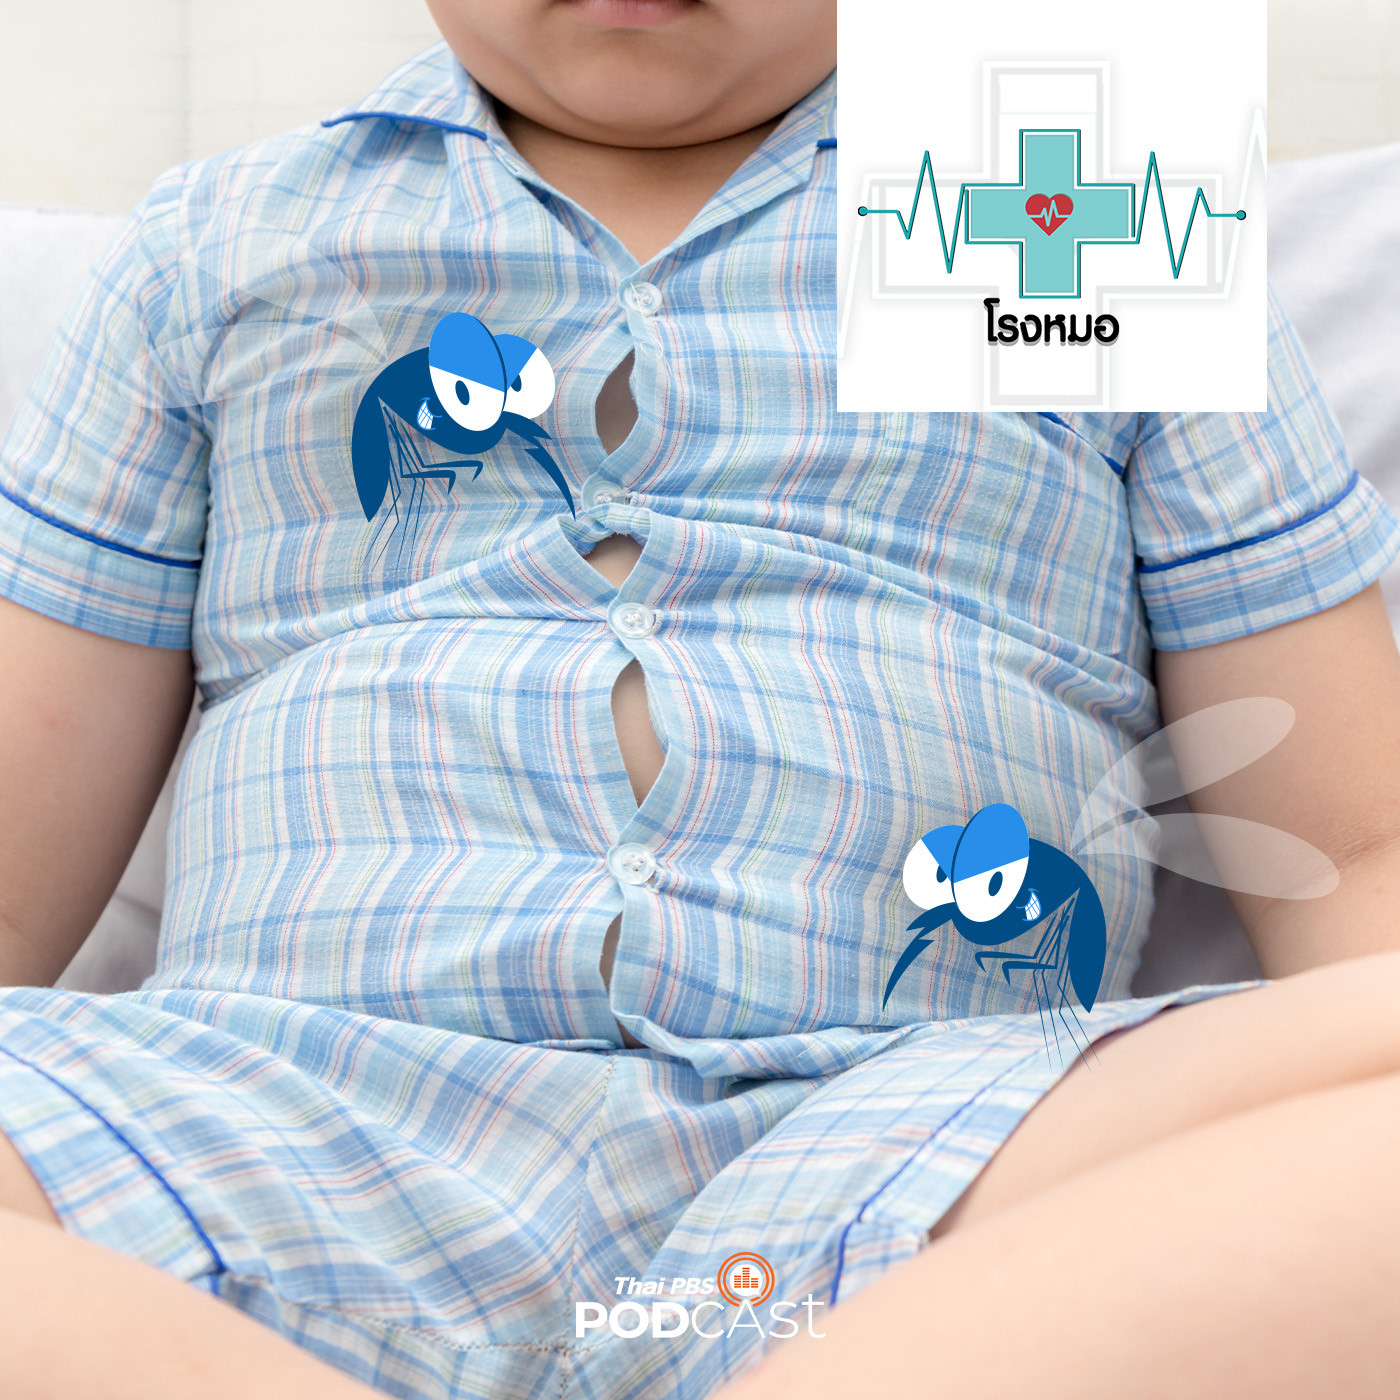 โรงหมอ EP. 836: เด็กอ้วน ทำไมเสี่ยงต่อโรคไข้เลือดออกมากกว่าเด็กผอม